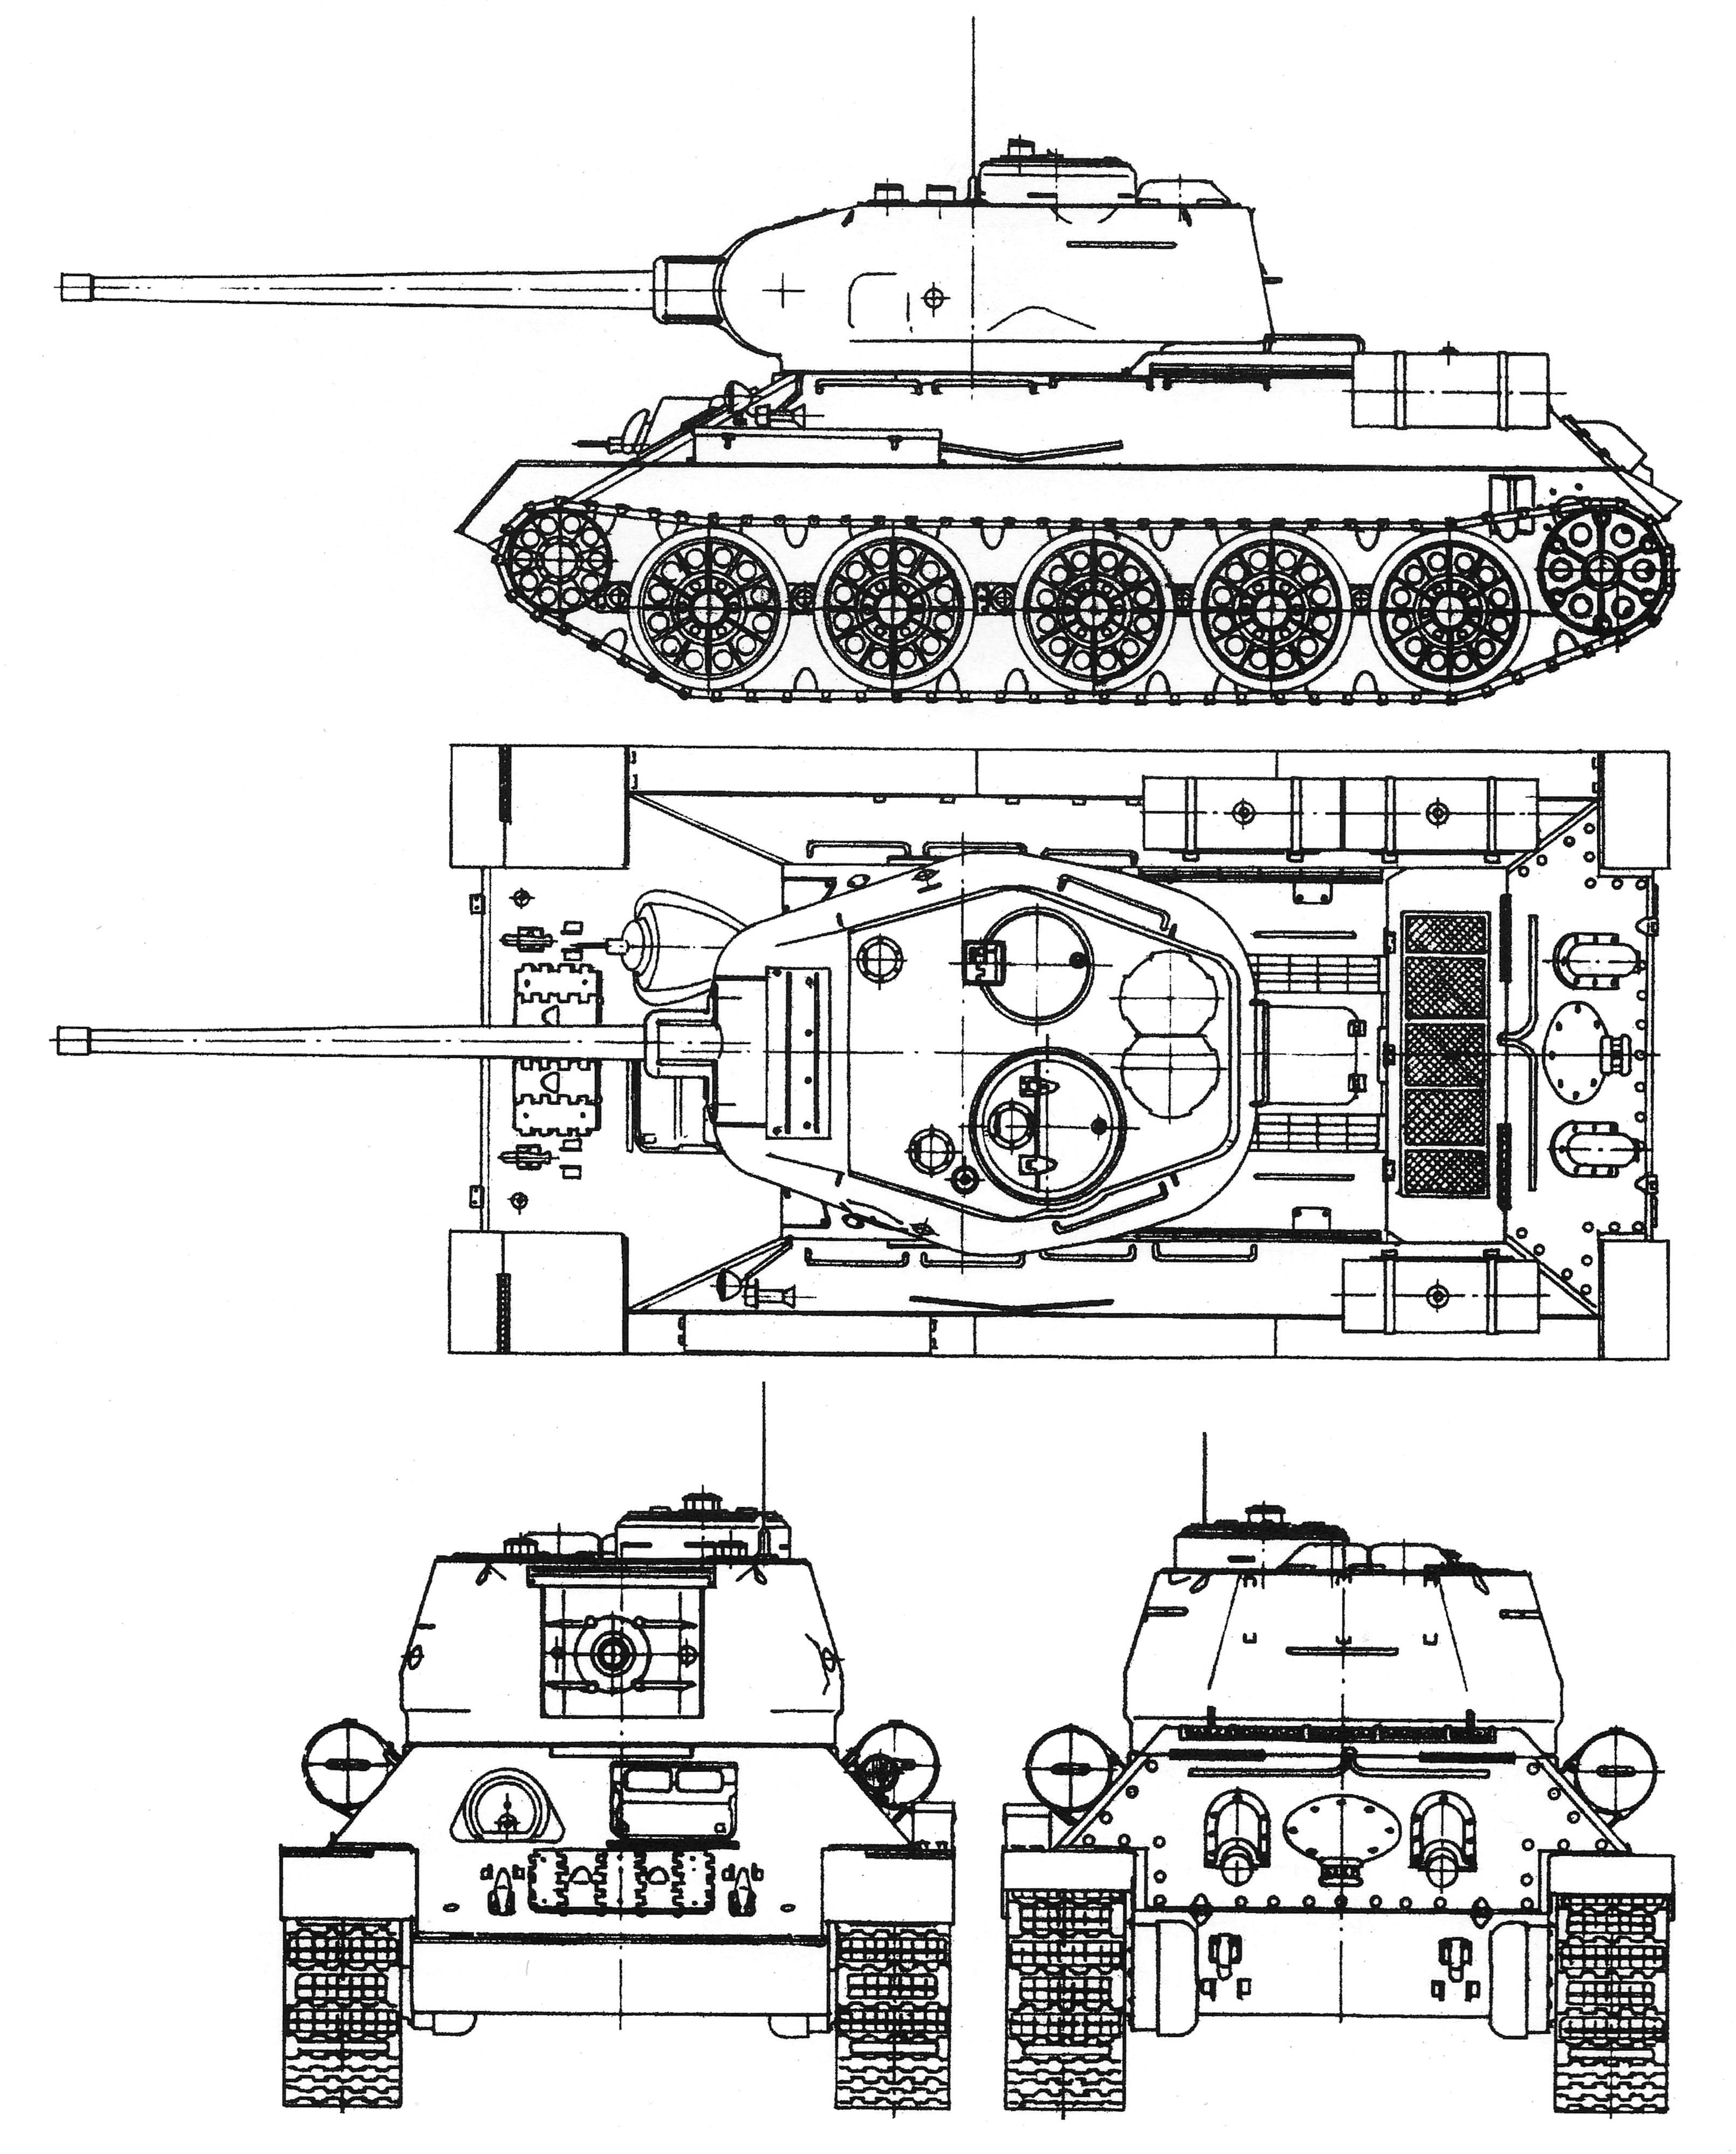 Чертеж танка Т-34-85, 1944 г. В результате Т-34 стал самым массовым танком ...